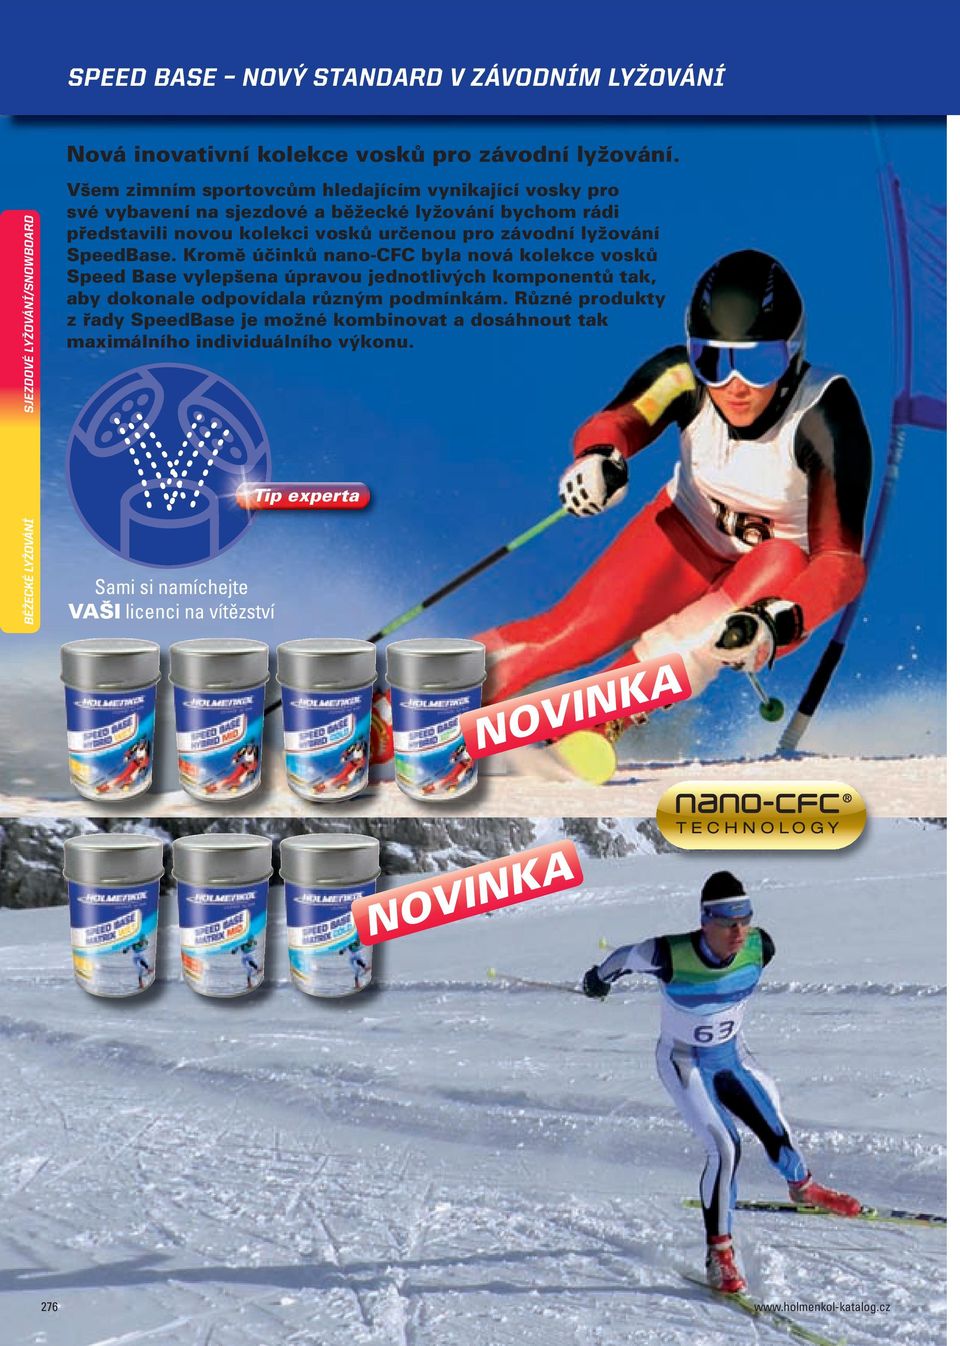 pro závodní lyžování SpeedBase.